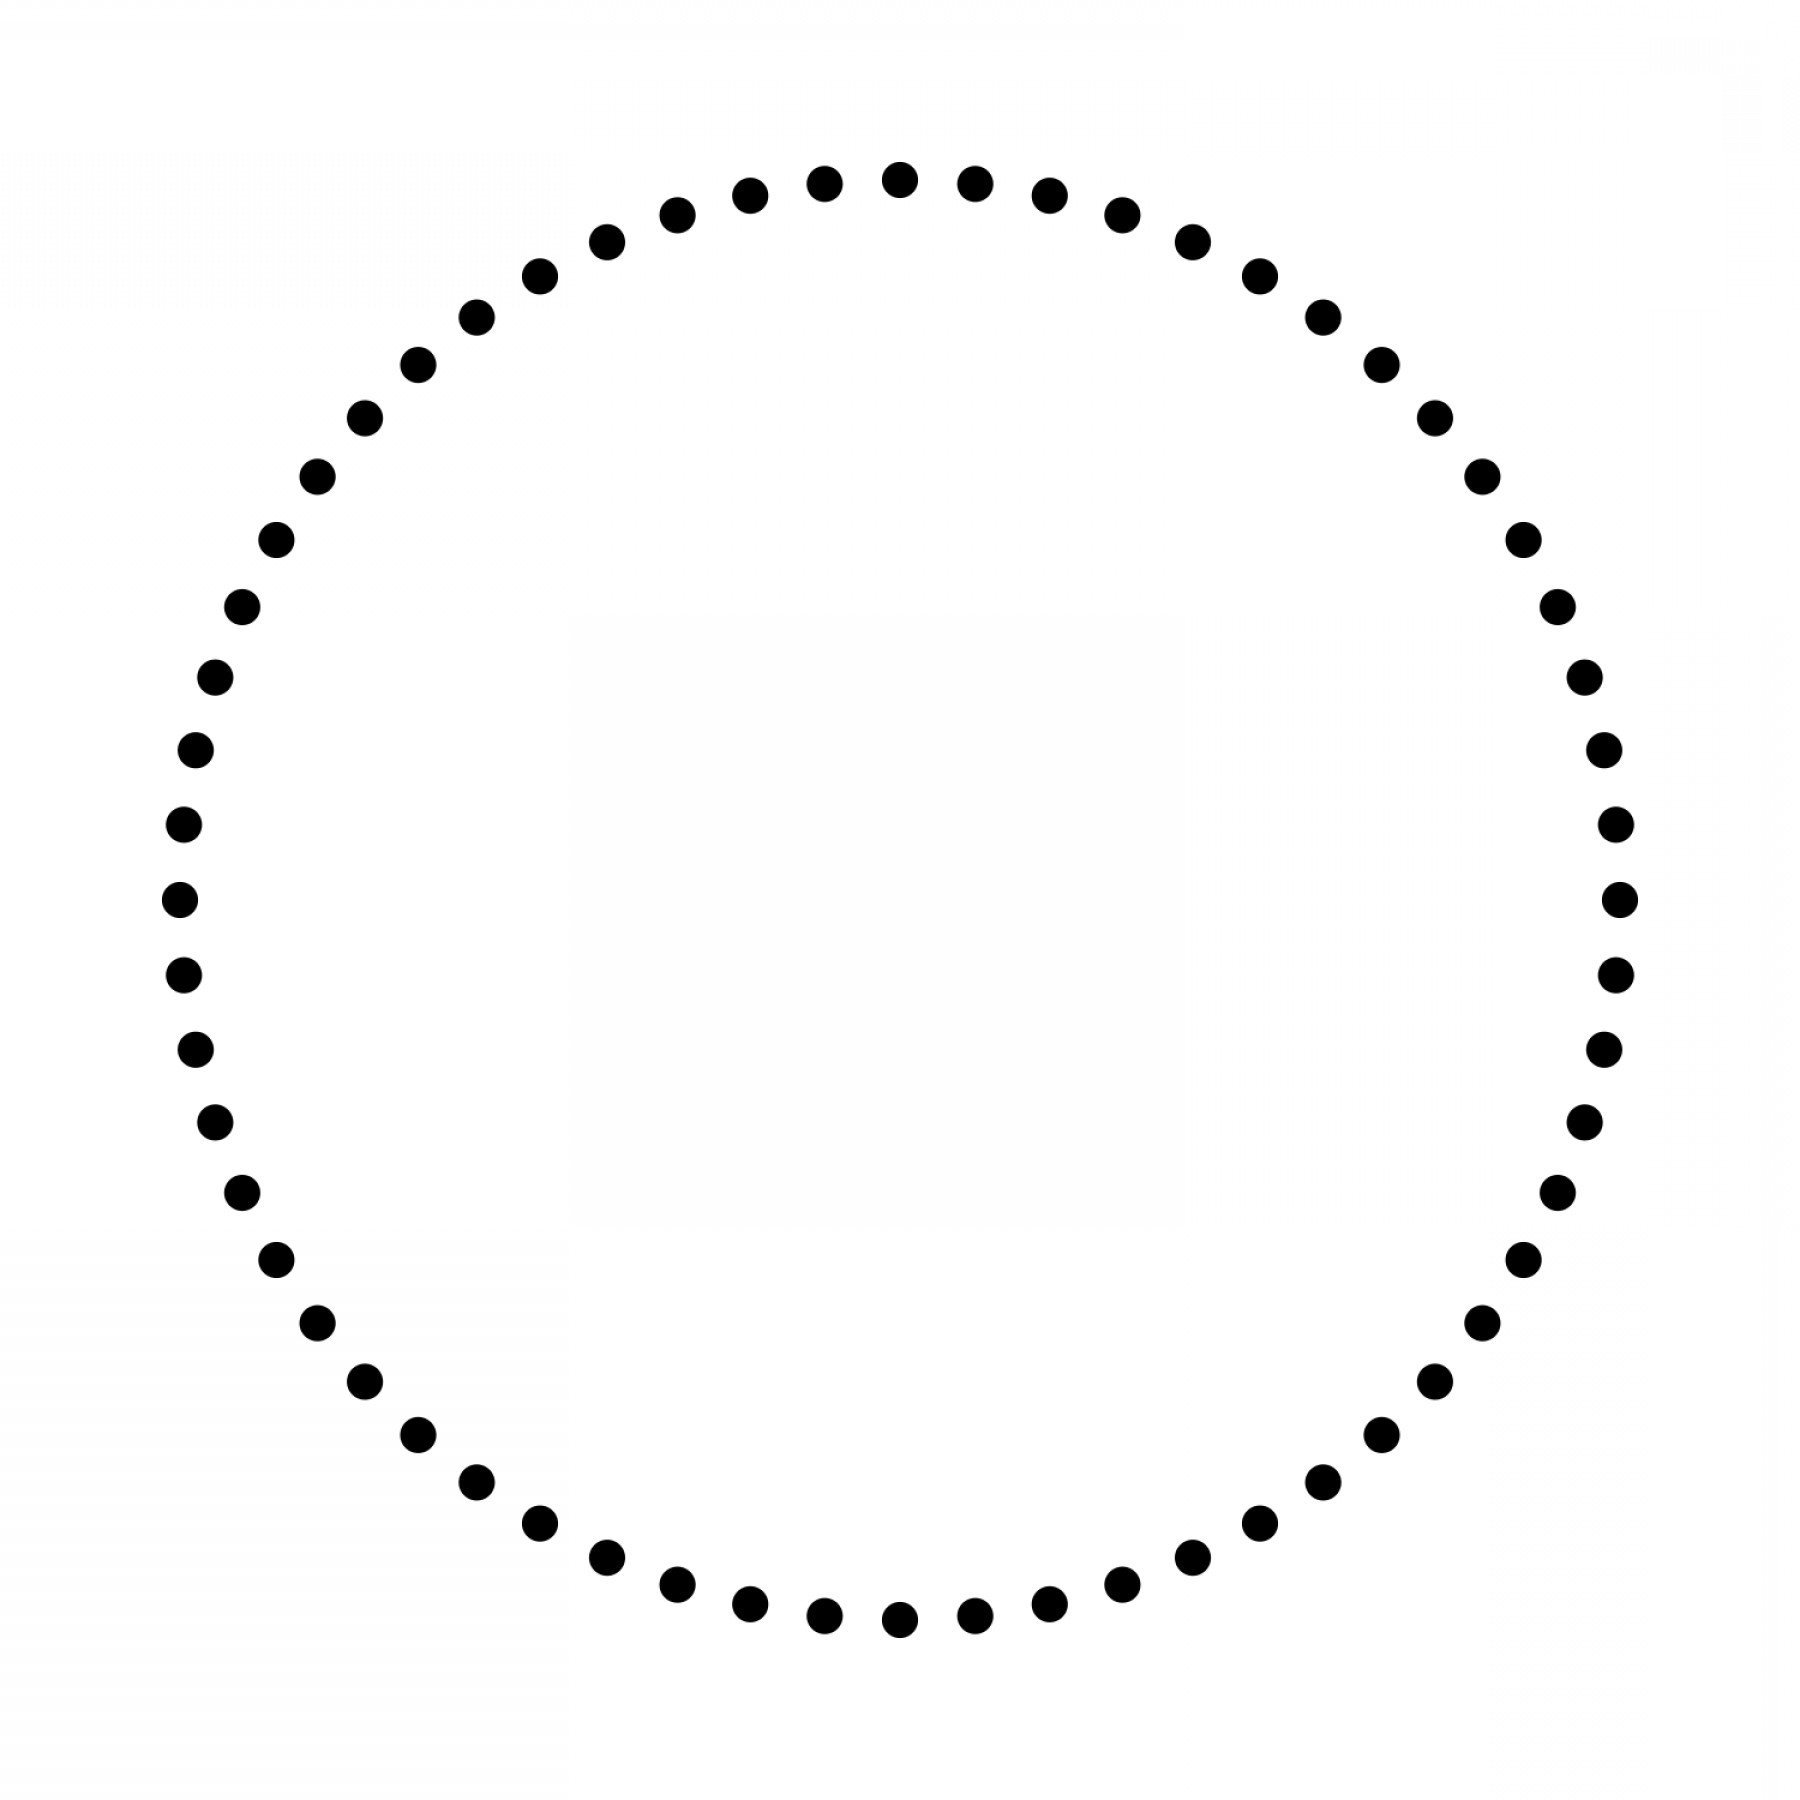 Circle points. Круг из точек. Круг пунктиром. Точки по кругу. Круг обводка.